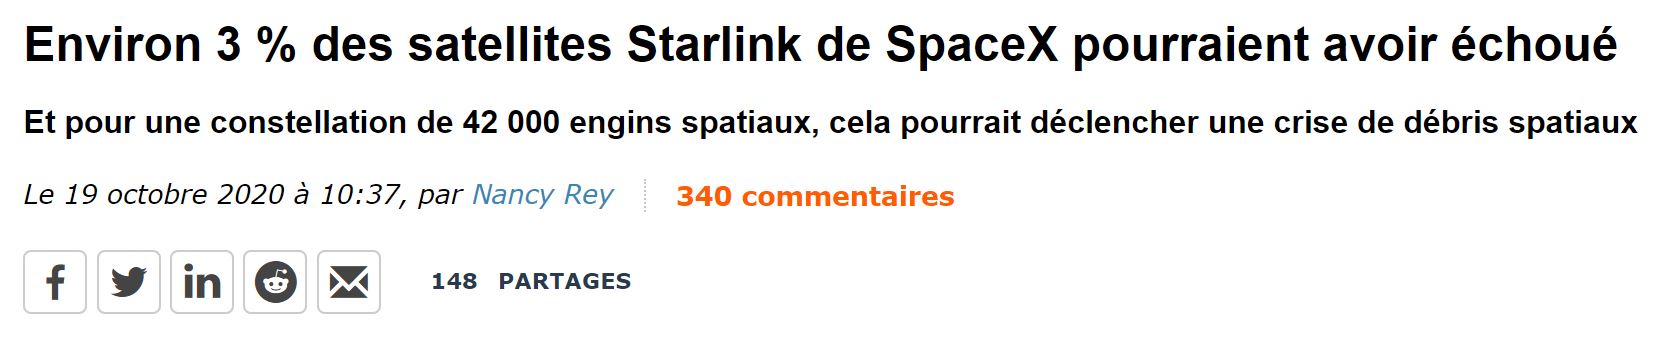 Satellites Starlink de SpaceX